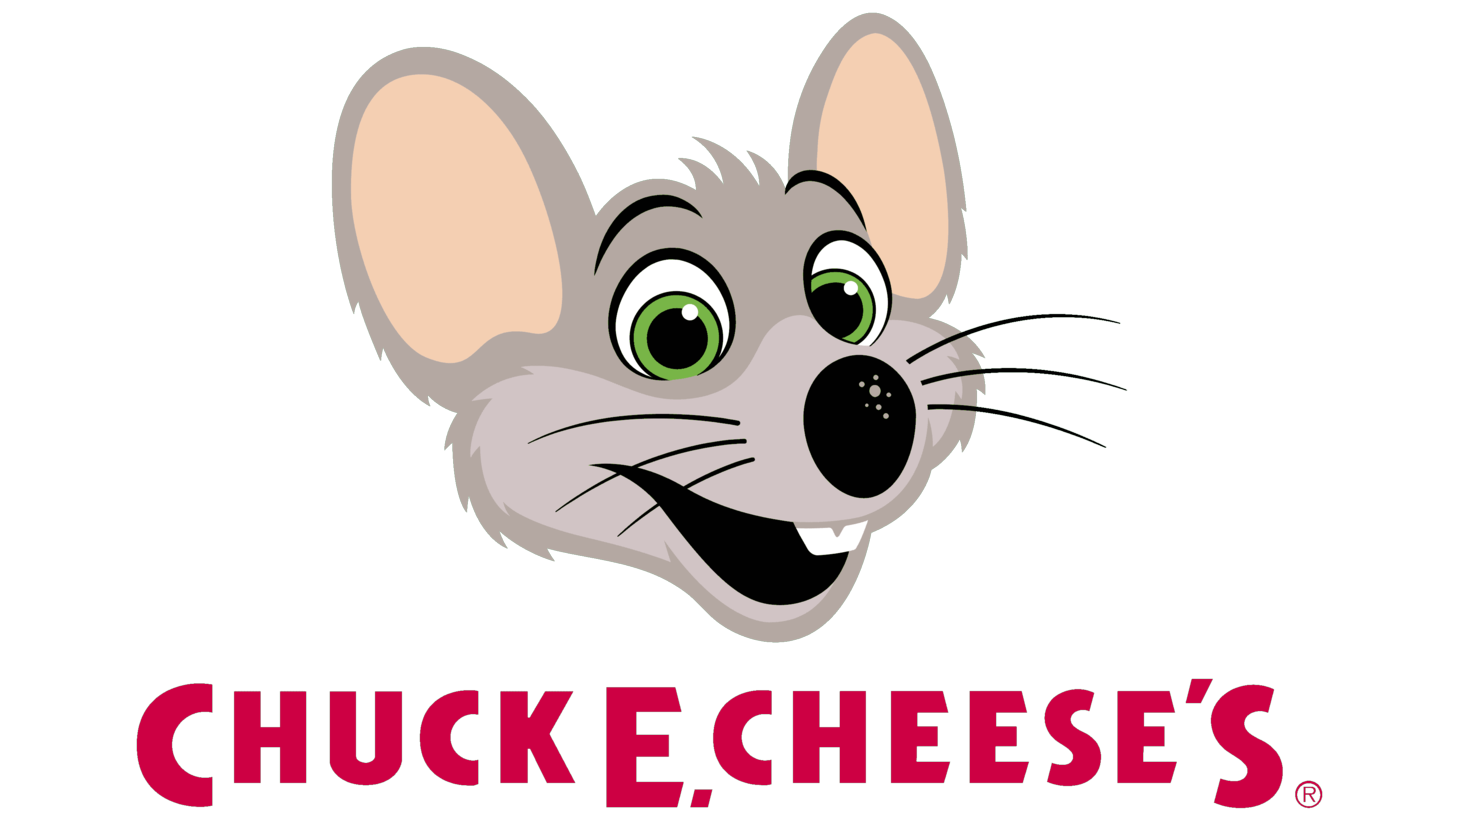 Chuck e. cheeses second era sign 2012 2019